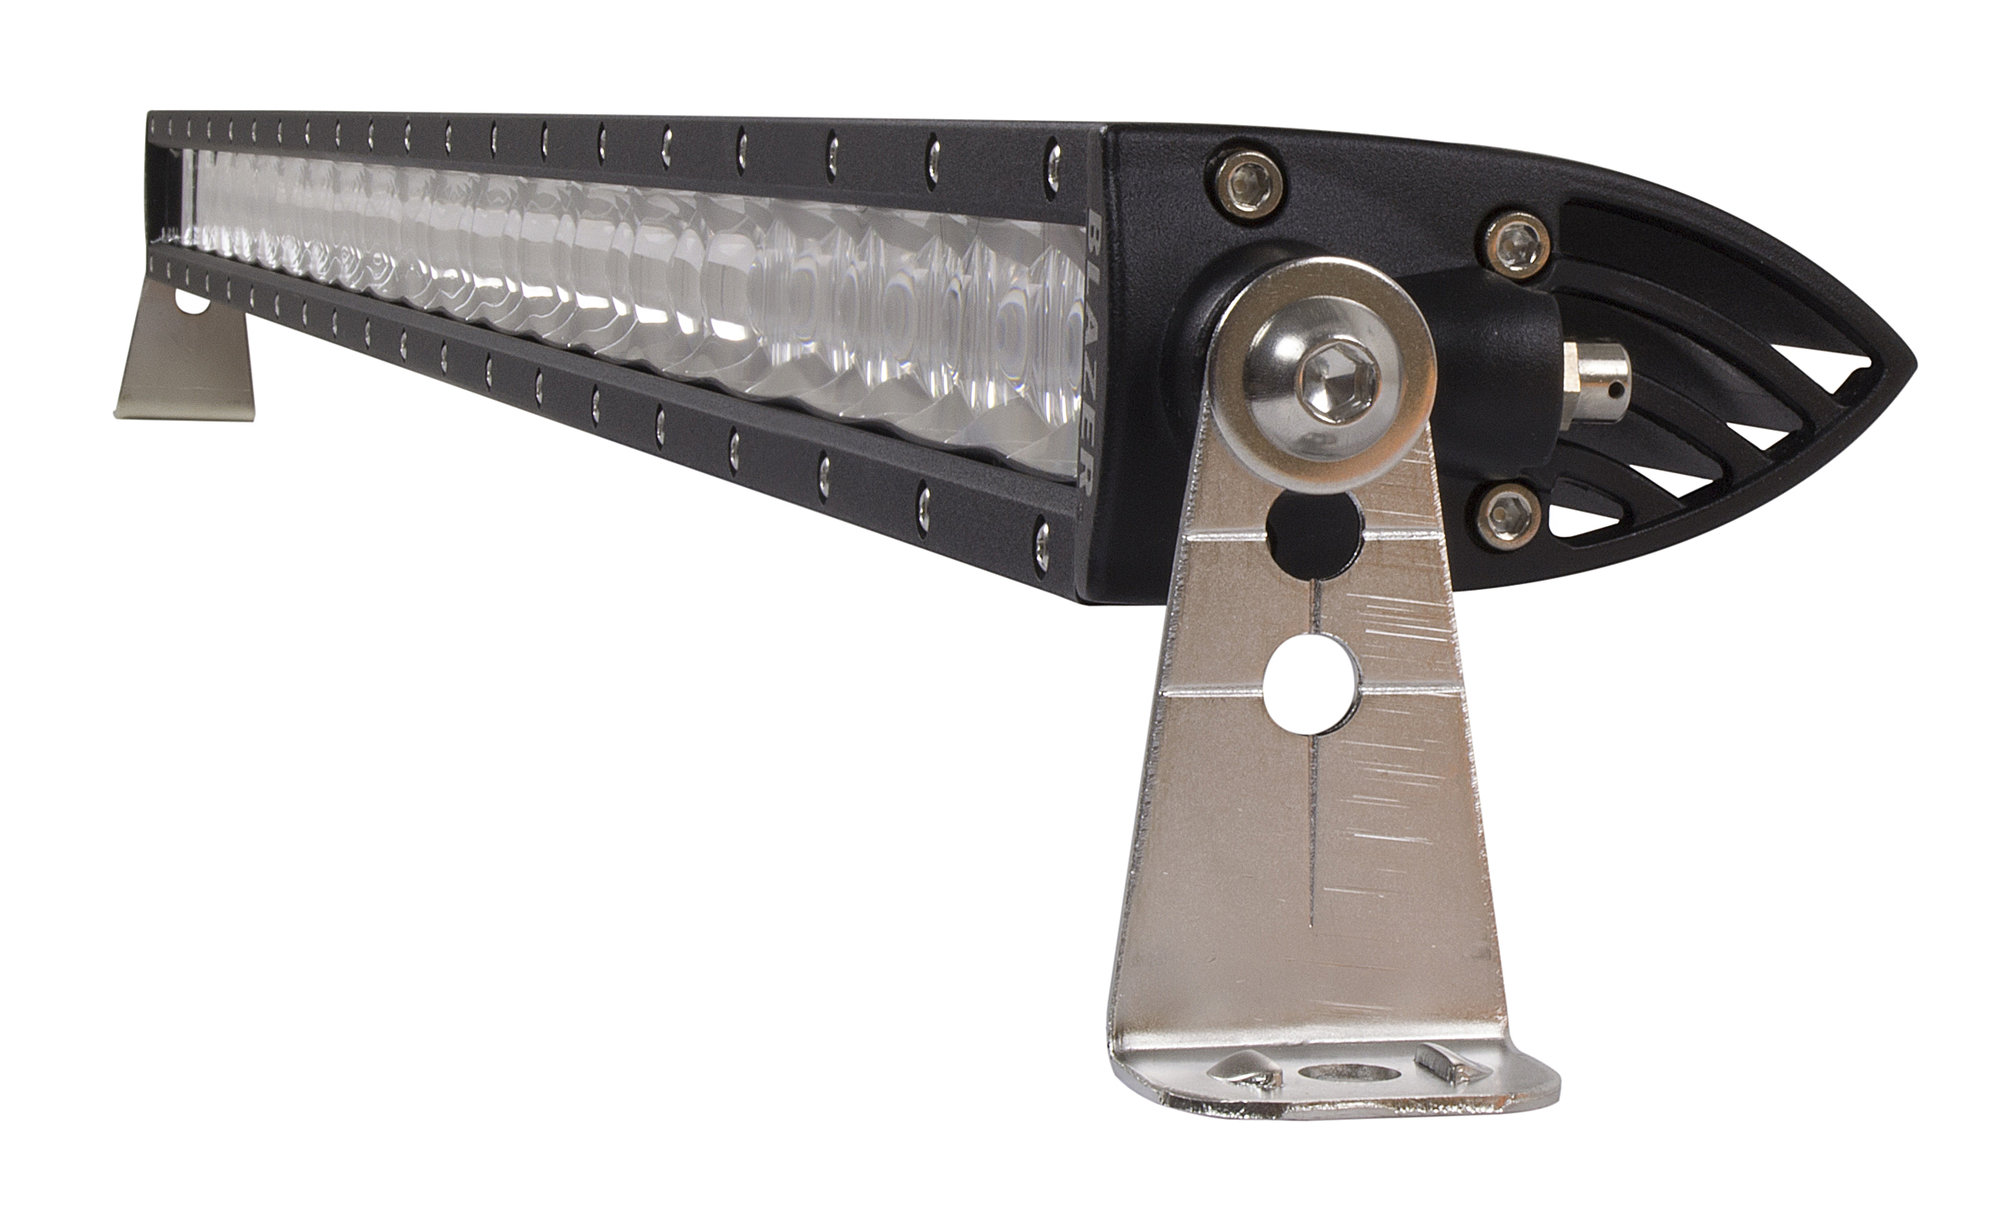 Blazer International 36" LED Combo Light Bar Spot/Fog Beam Pattern